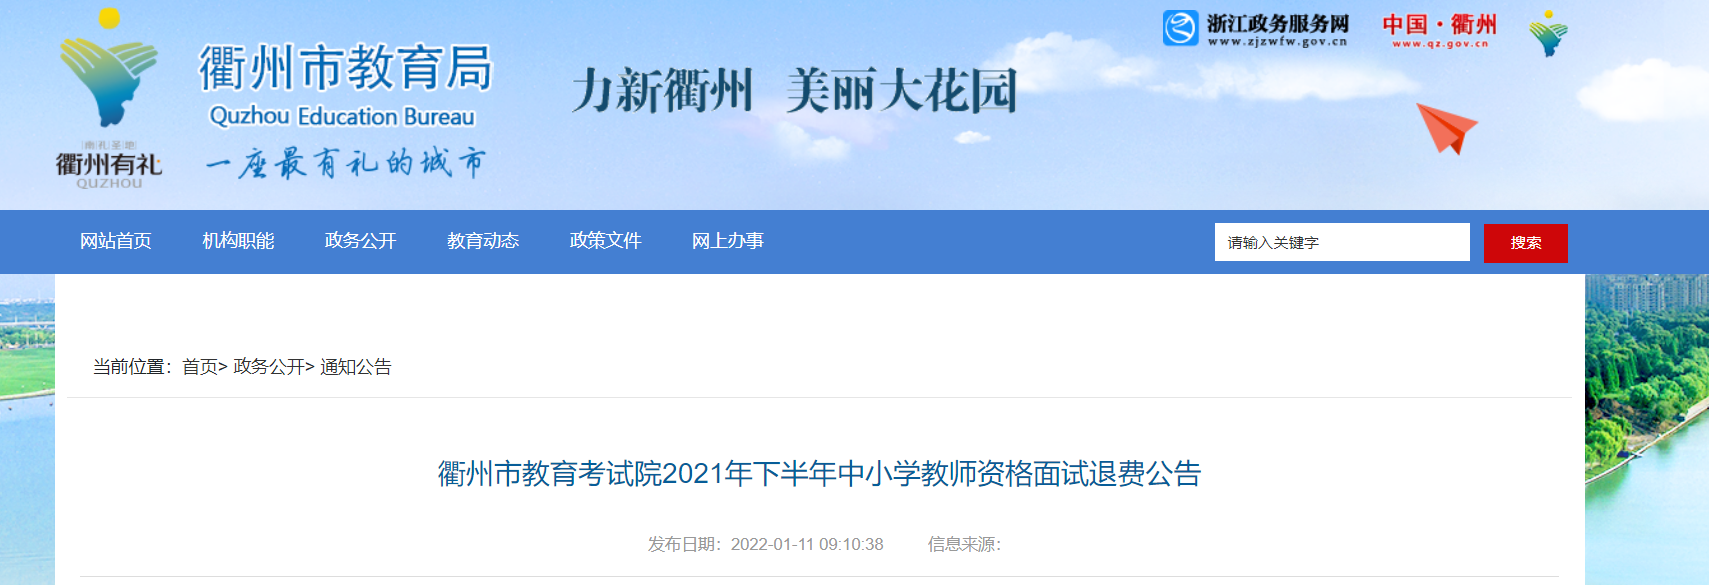 2021年下半年浙江衢州中小学教师资格面试退费公告